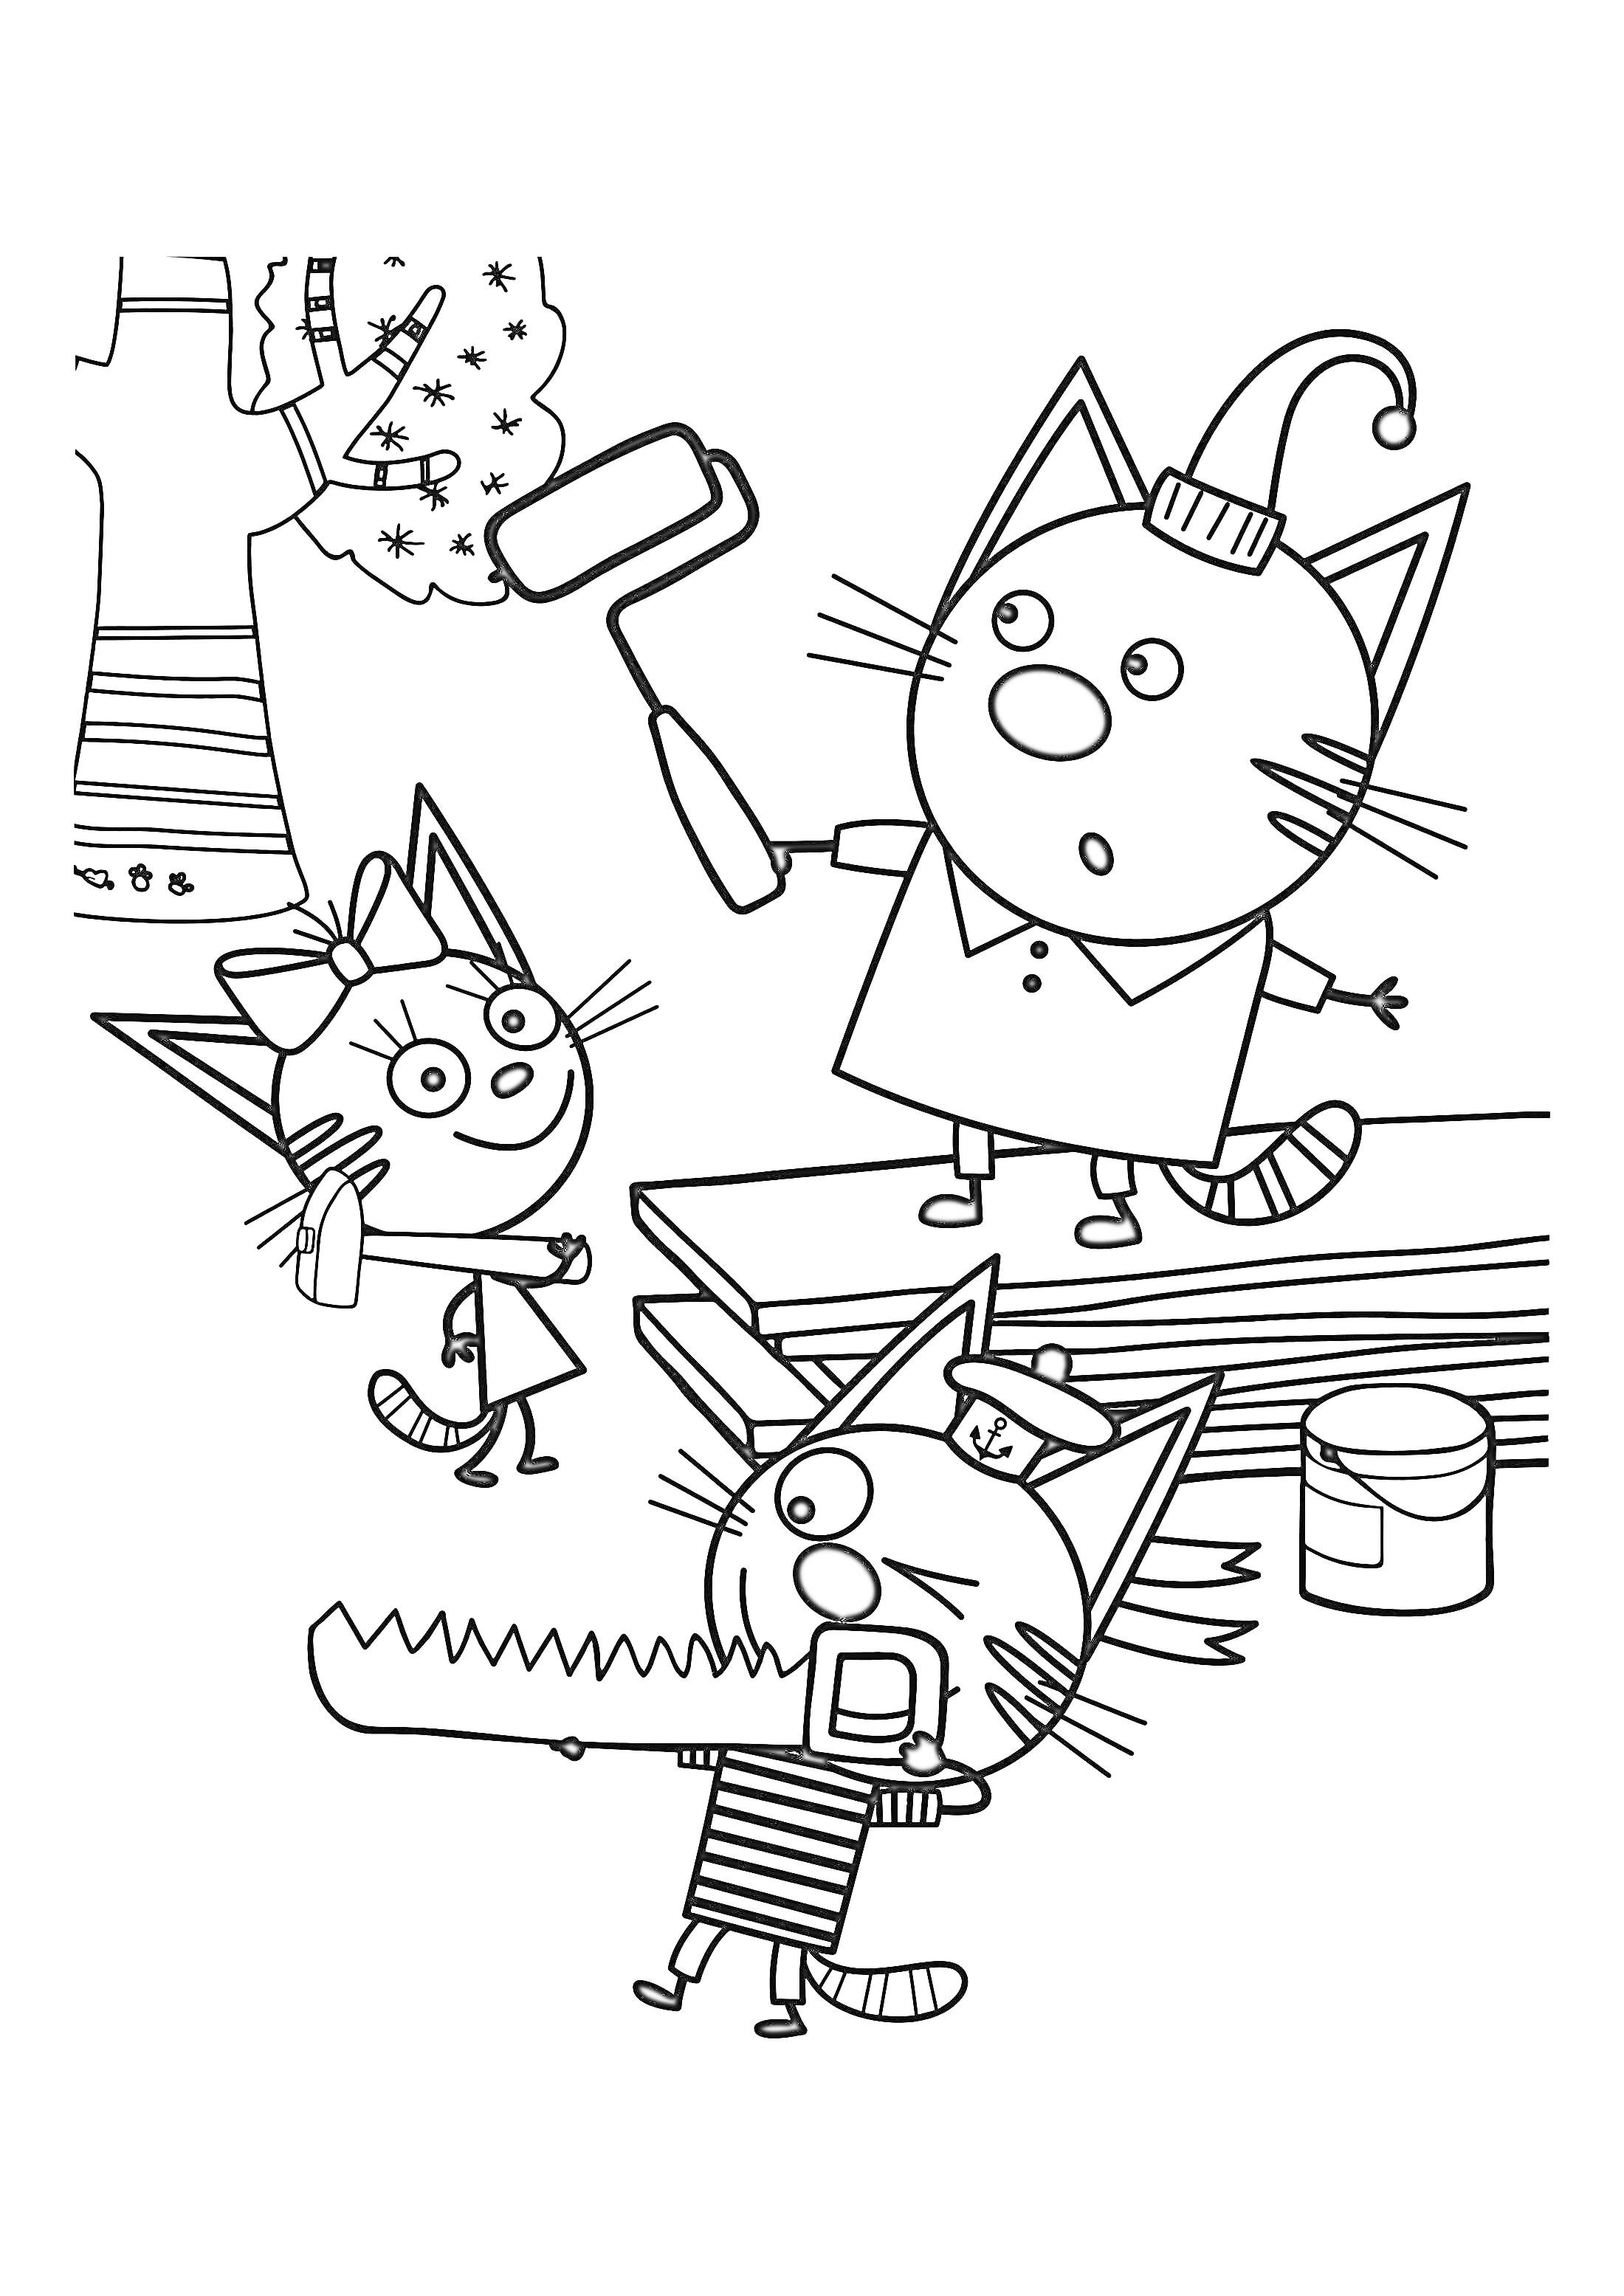 Котята работают: кот с валиком возле дерева, котенок с пилой, кошечка с бантом